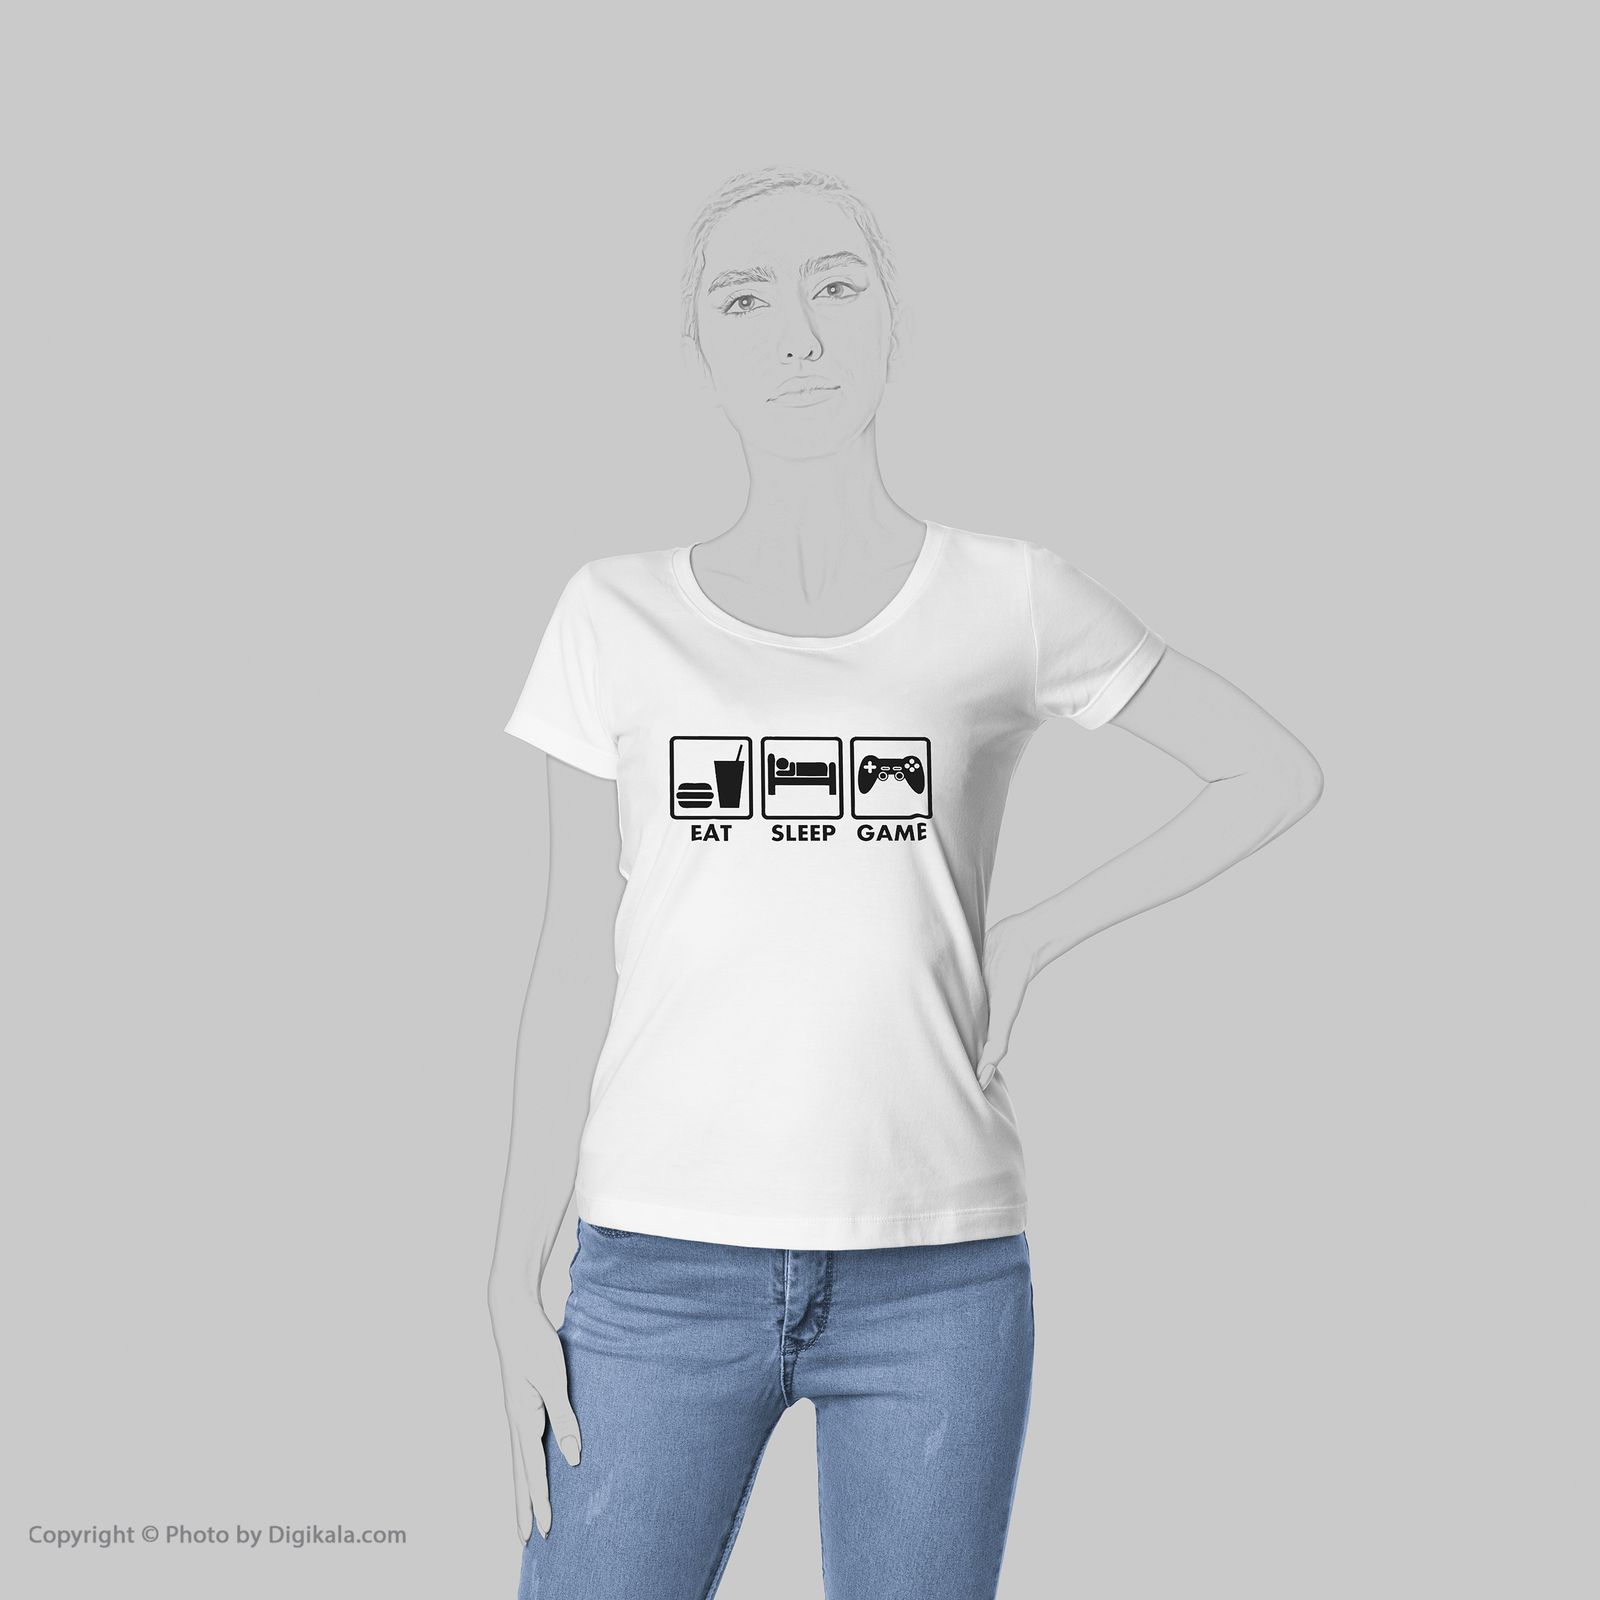 تی شرت زنانه به رسم طرح گیمر کد5510 -  - 5